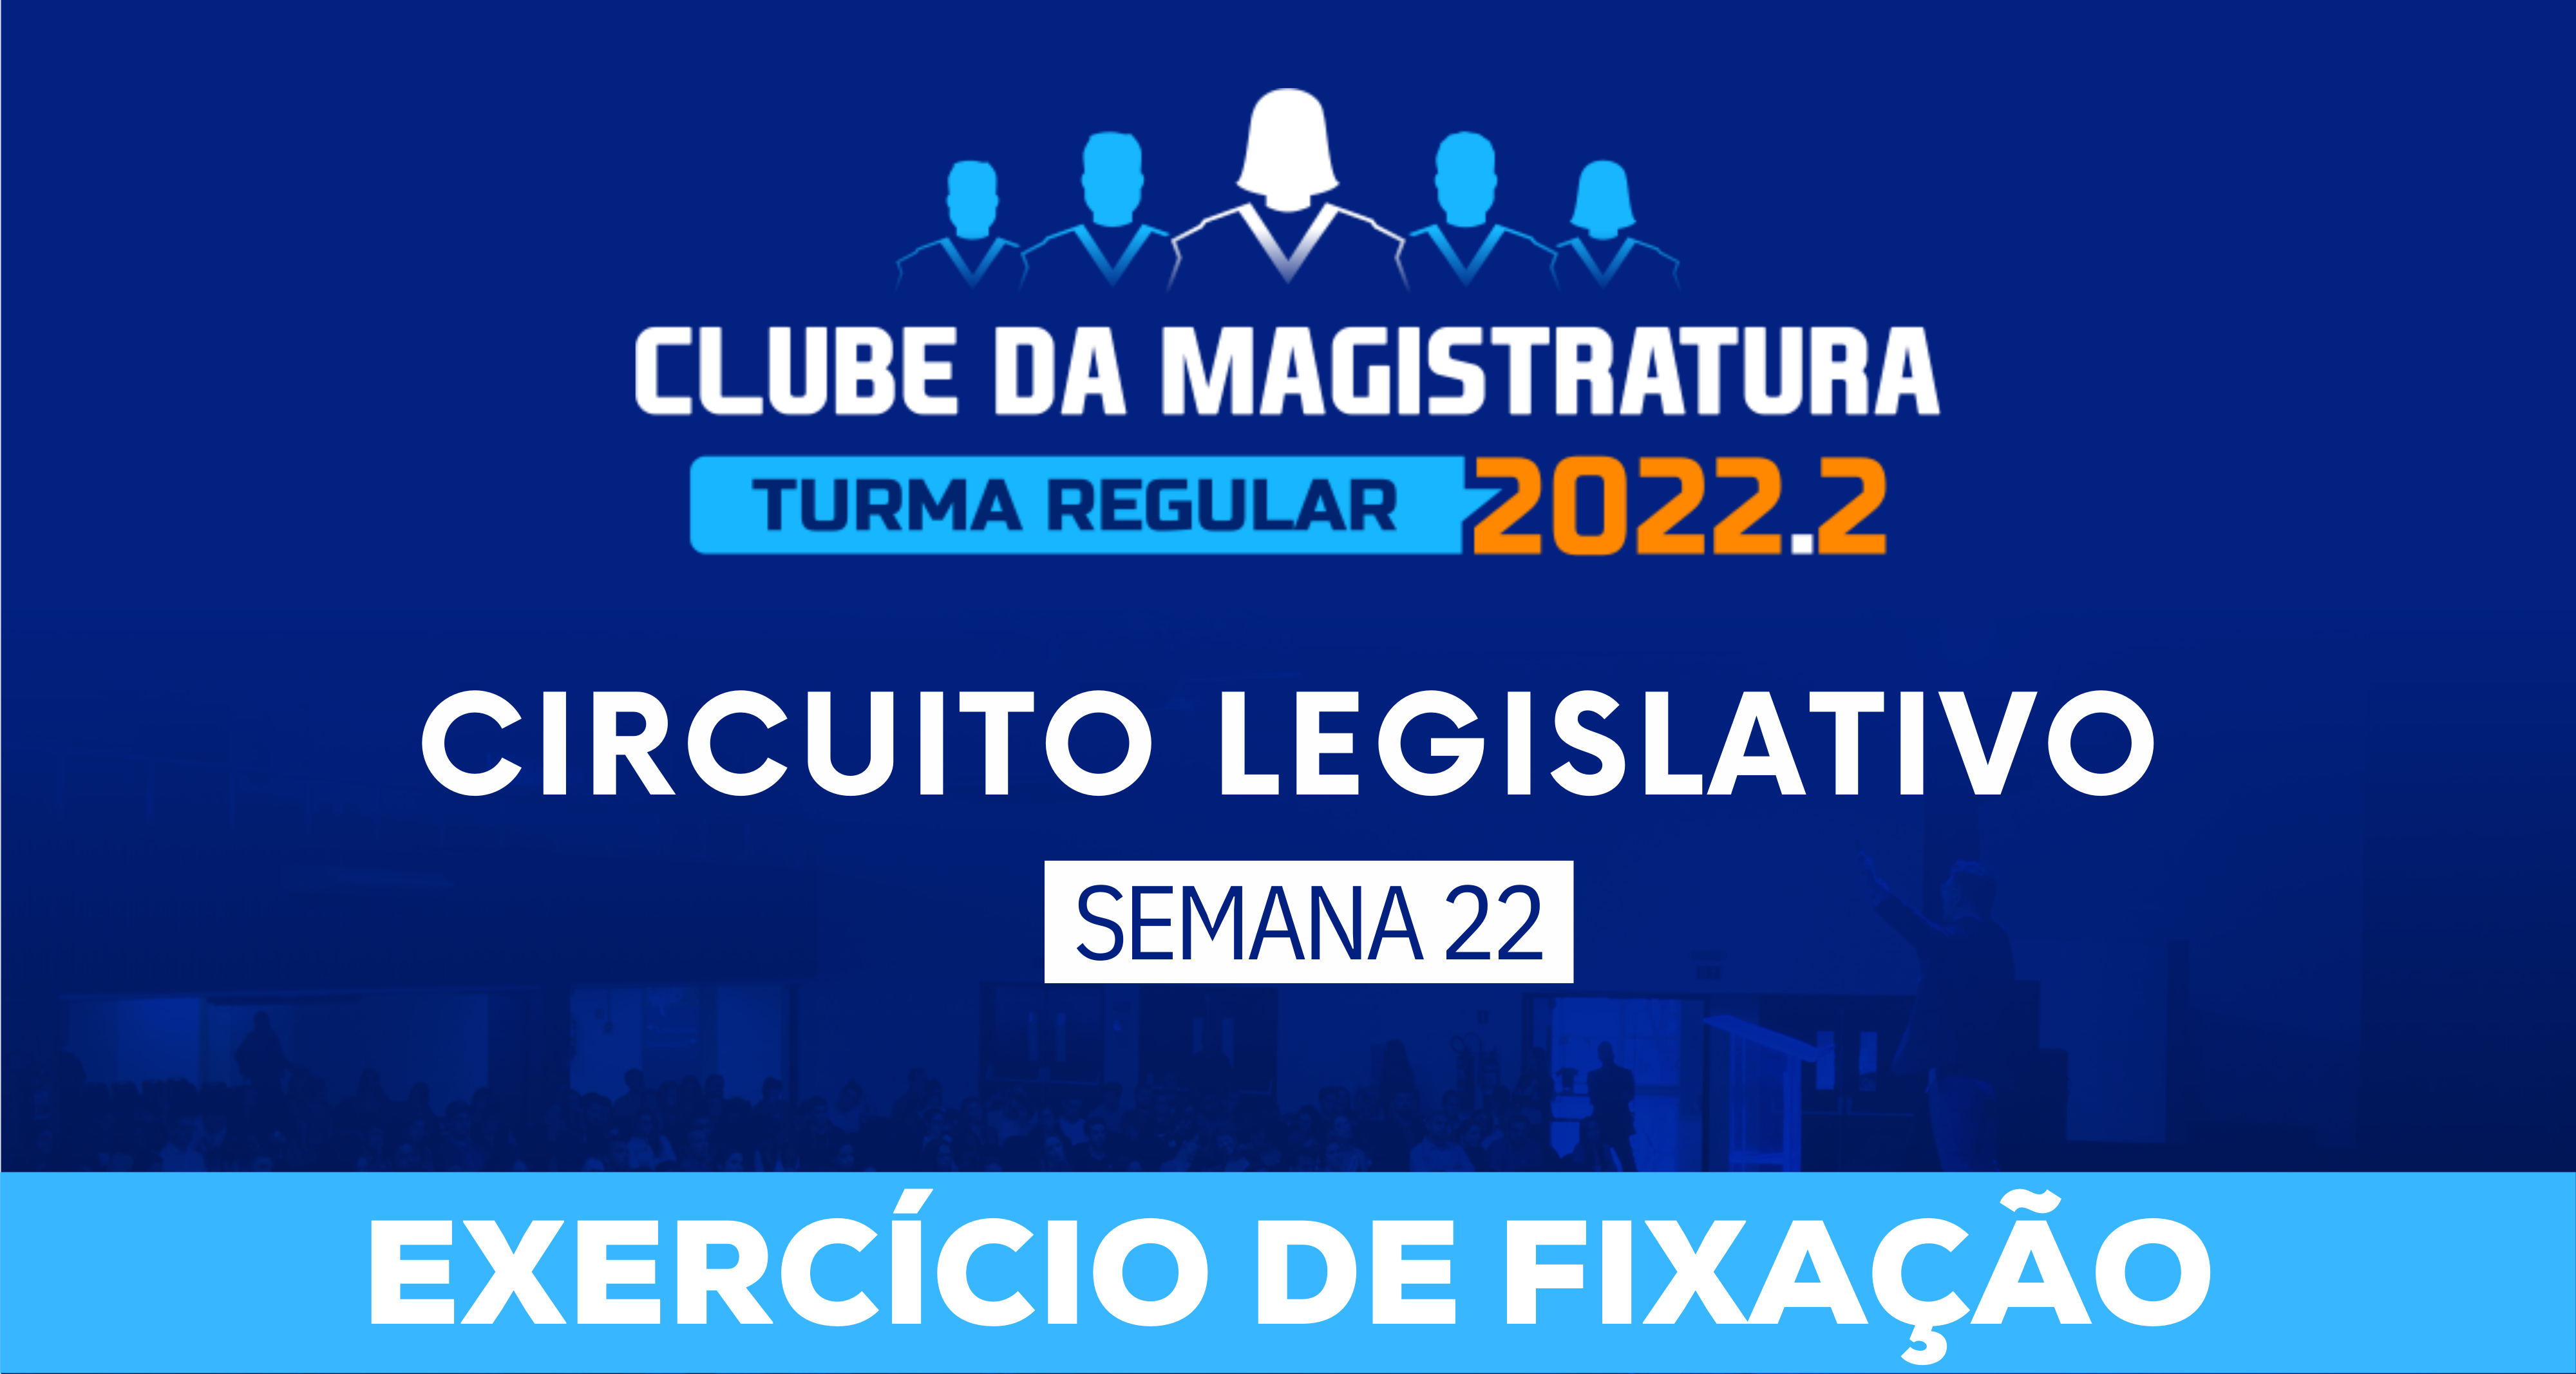 Circuito Legislativo 2022.2 (Clube da Magistratura - Semana 22)